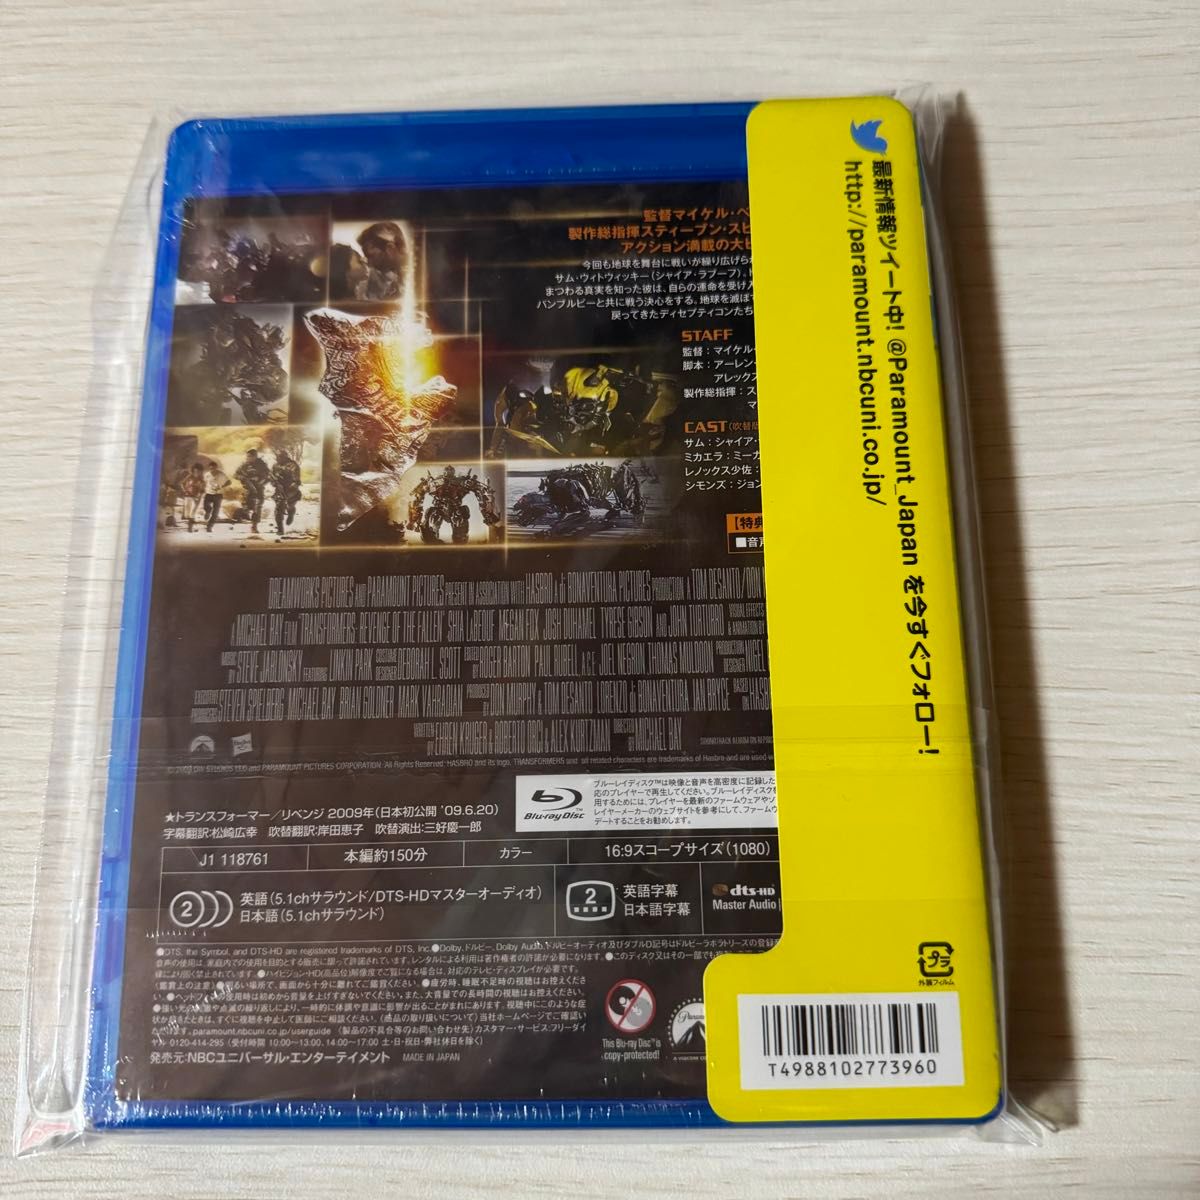 トランスフォーマー/リベンジ (Blu-ray Disc) シャイアラブーフ 未開封